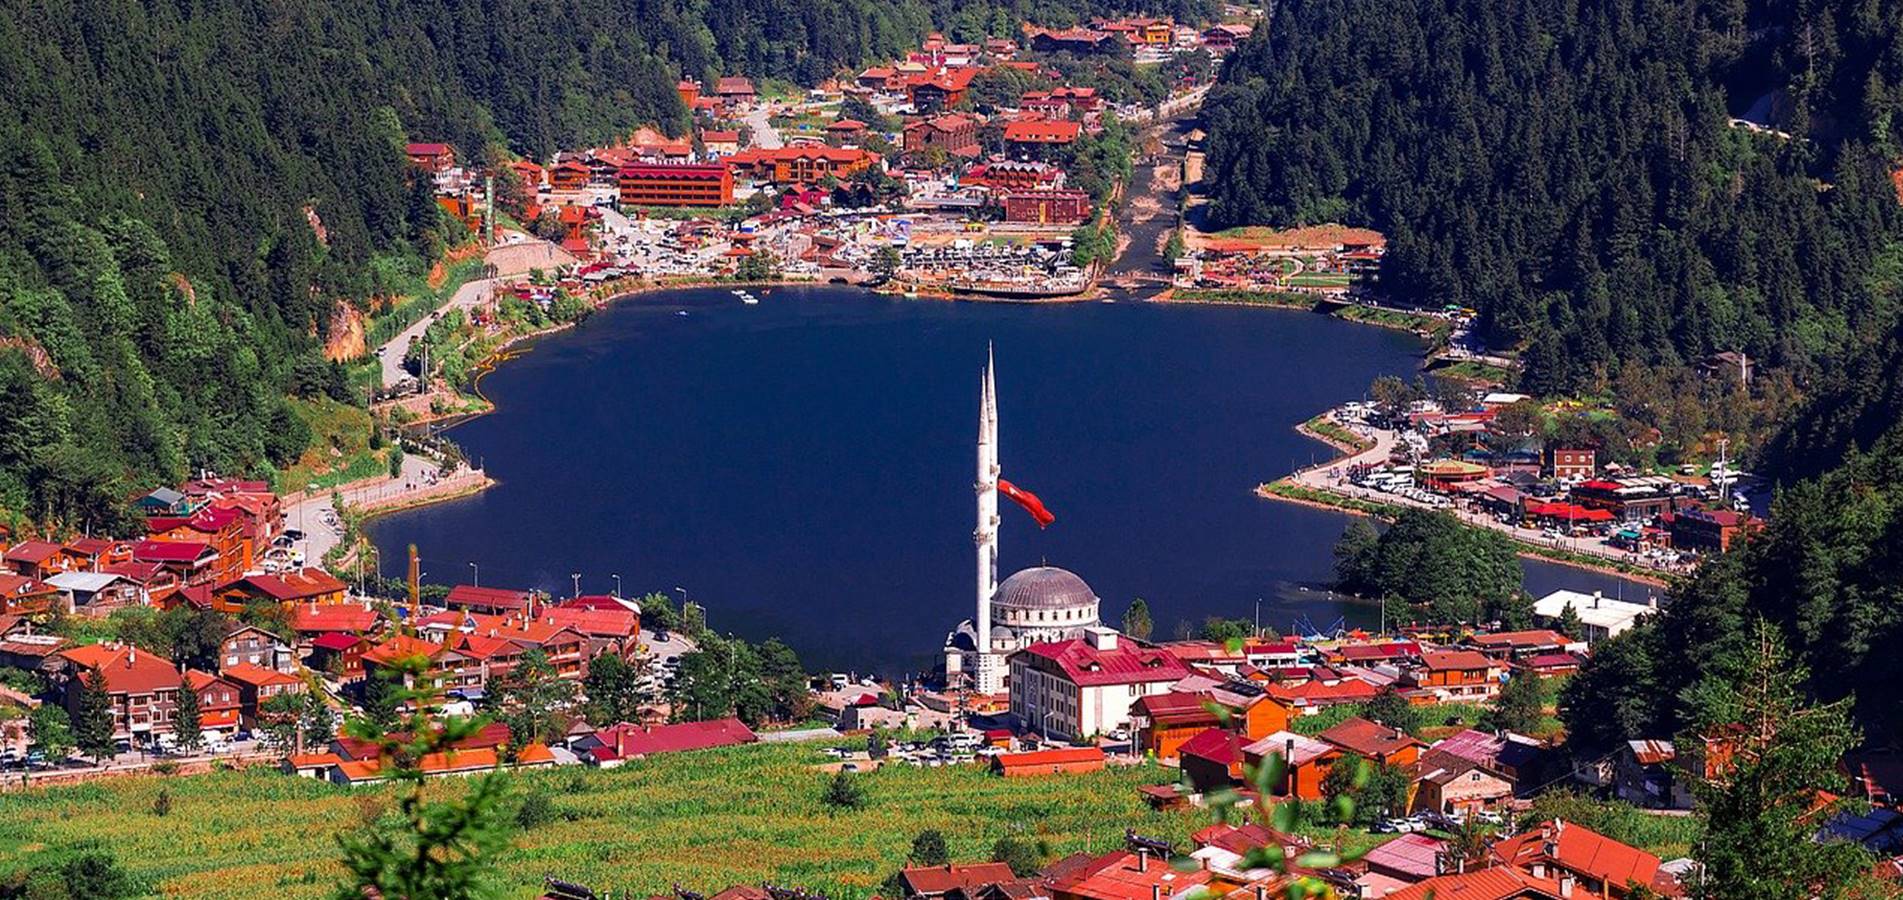 السياحة في تركيا 2021: شركة مقام للسياحة - رحلات طرابزون